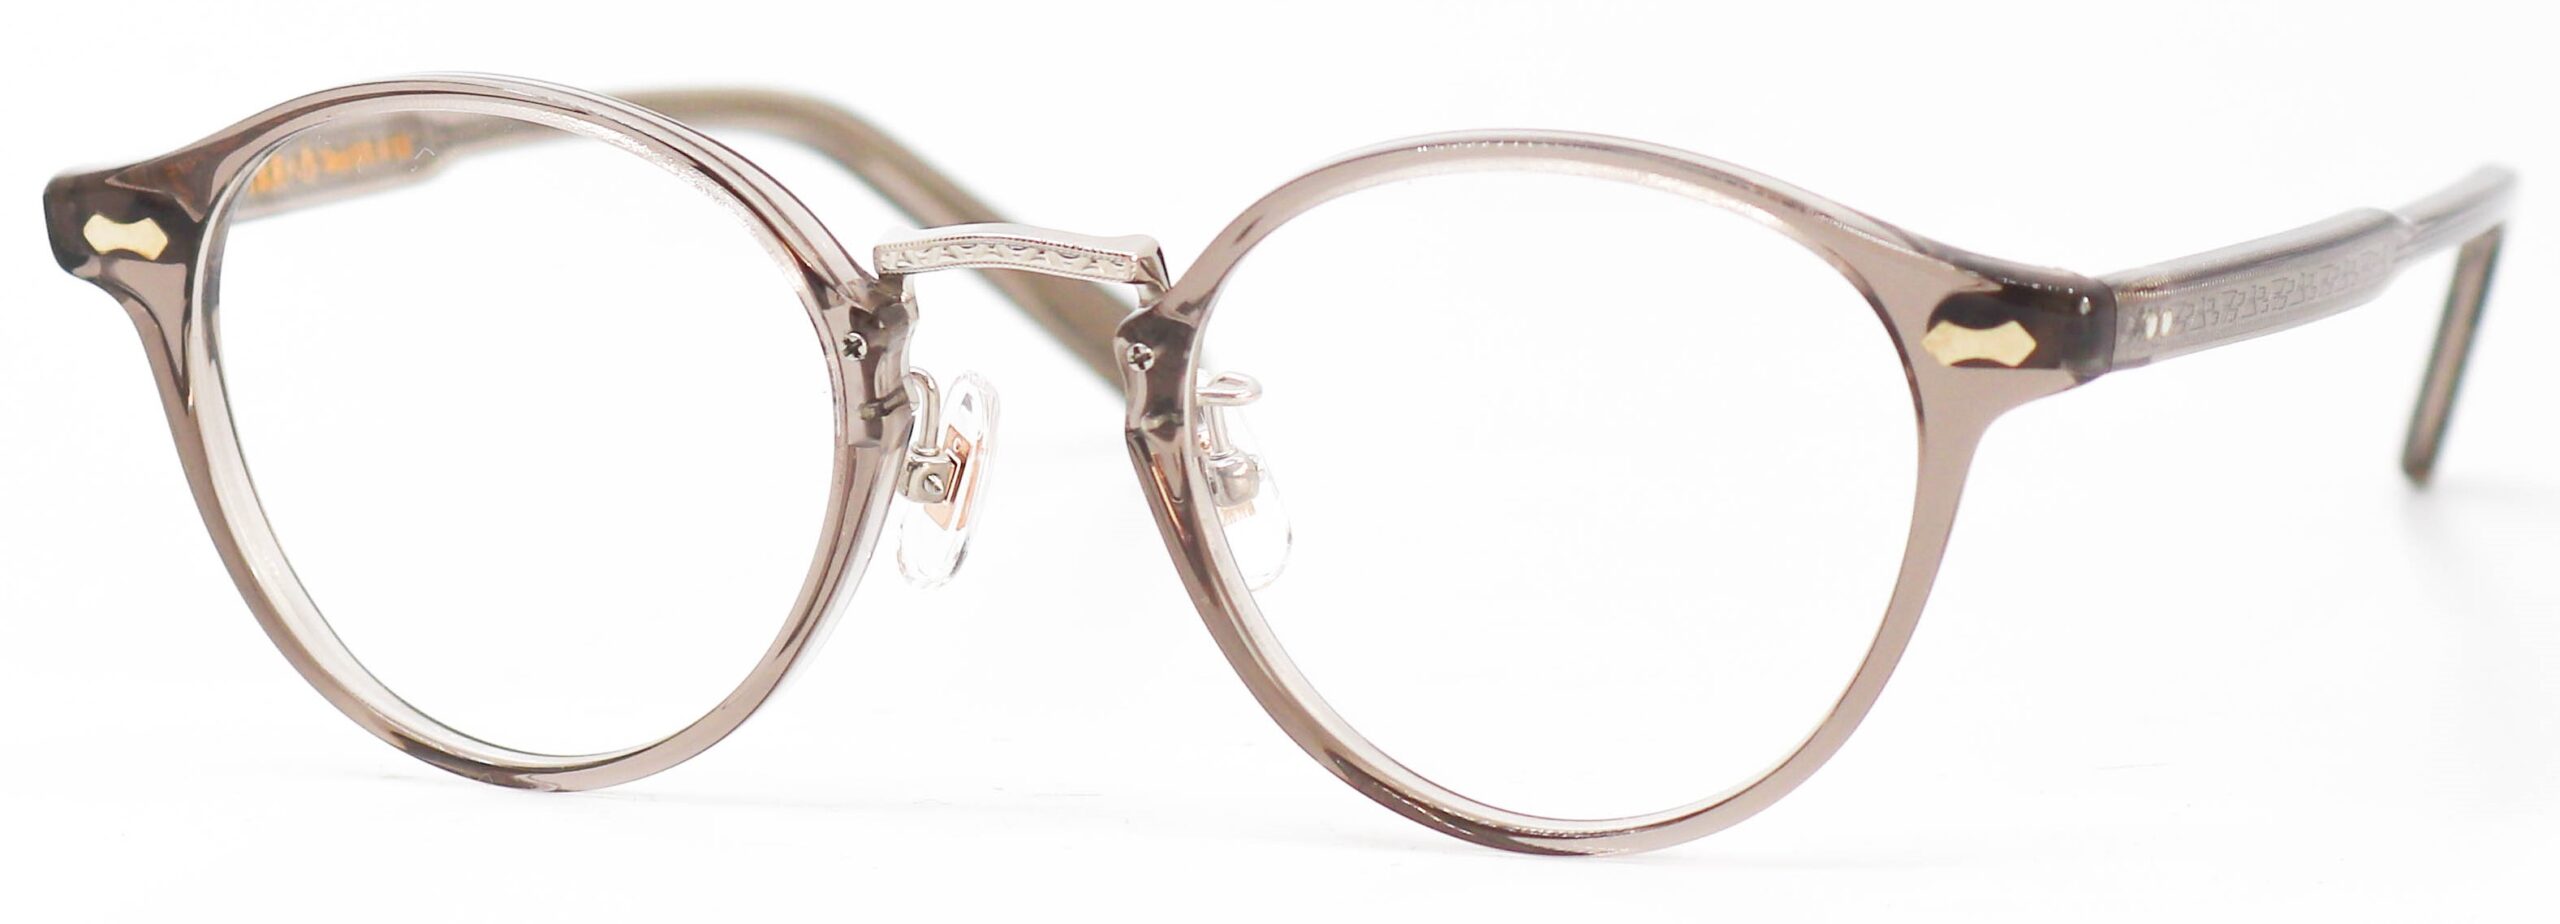 眼鏡のカラータイプC-5 Light-Gray/Silver